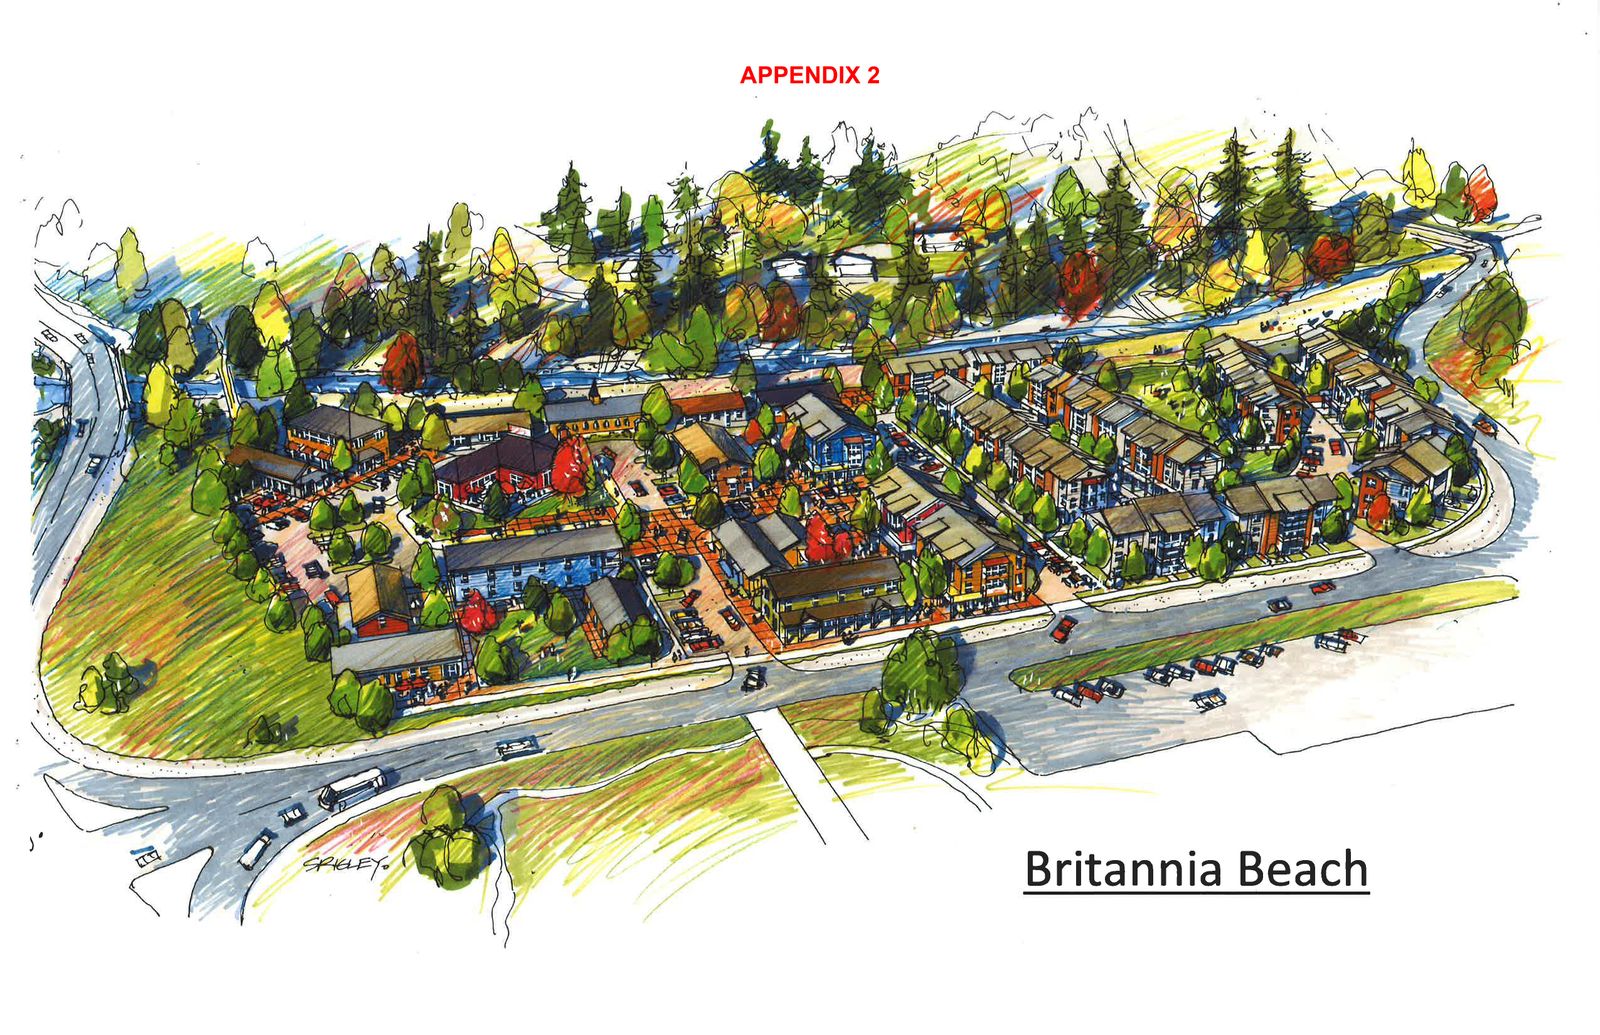 NEW DEVELOPMENT ALERT: Britannia Beach Village